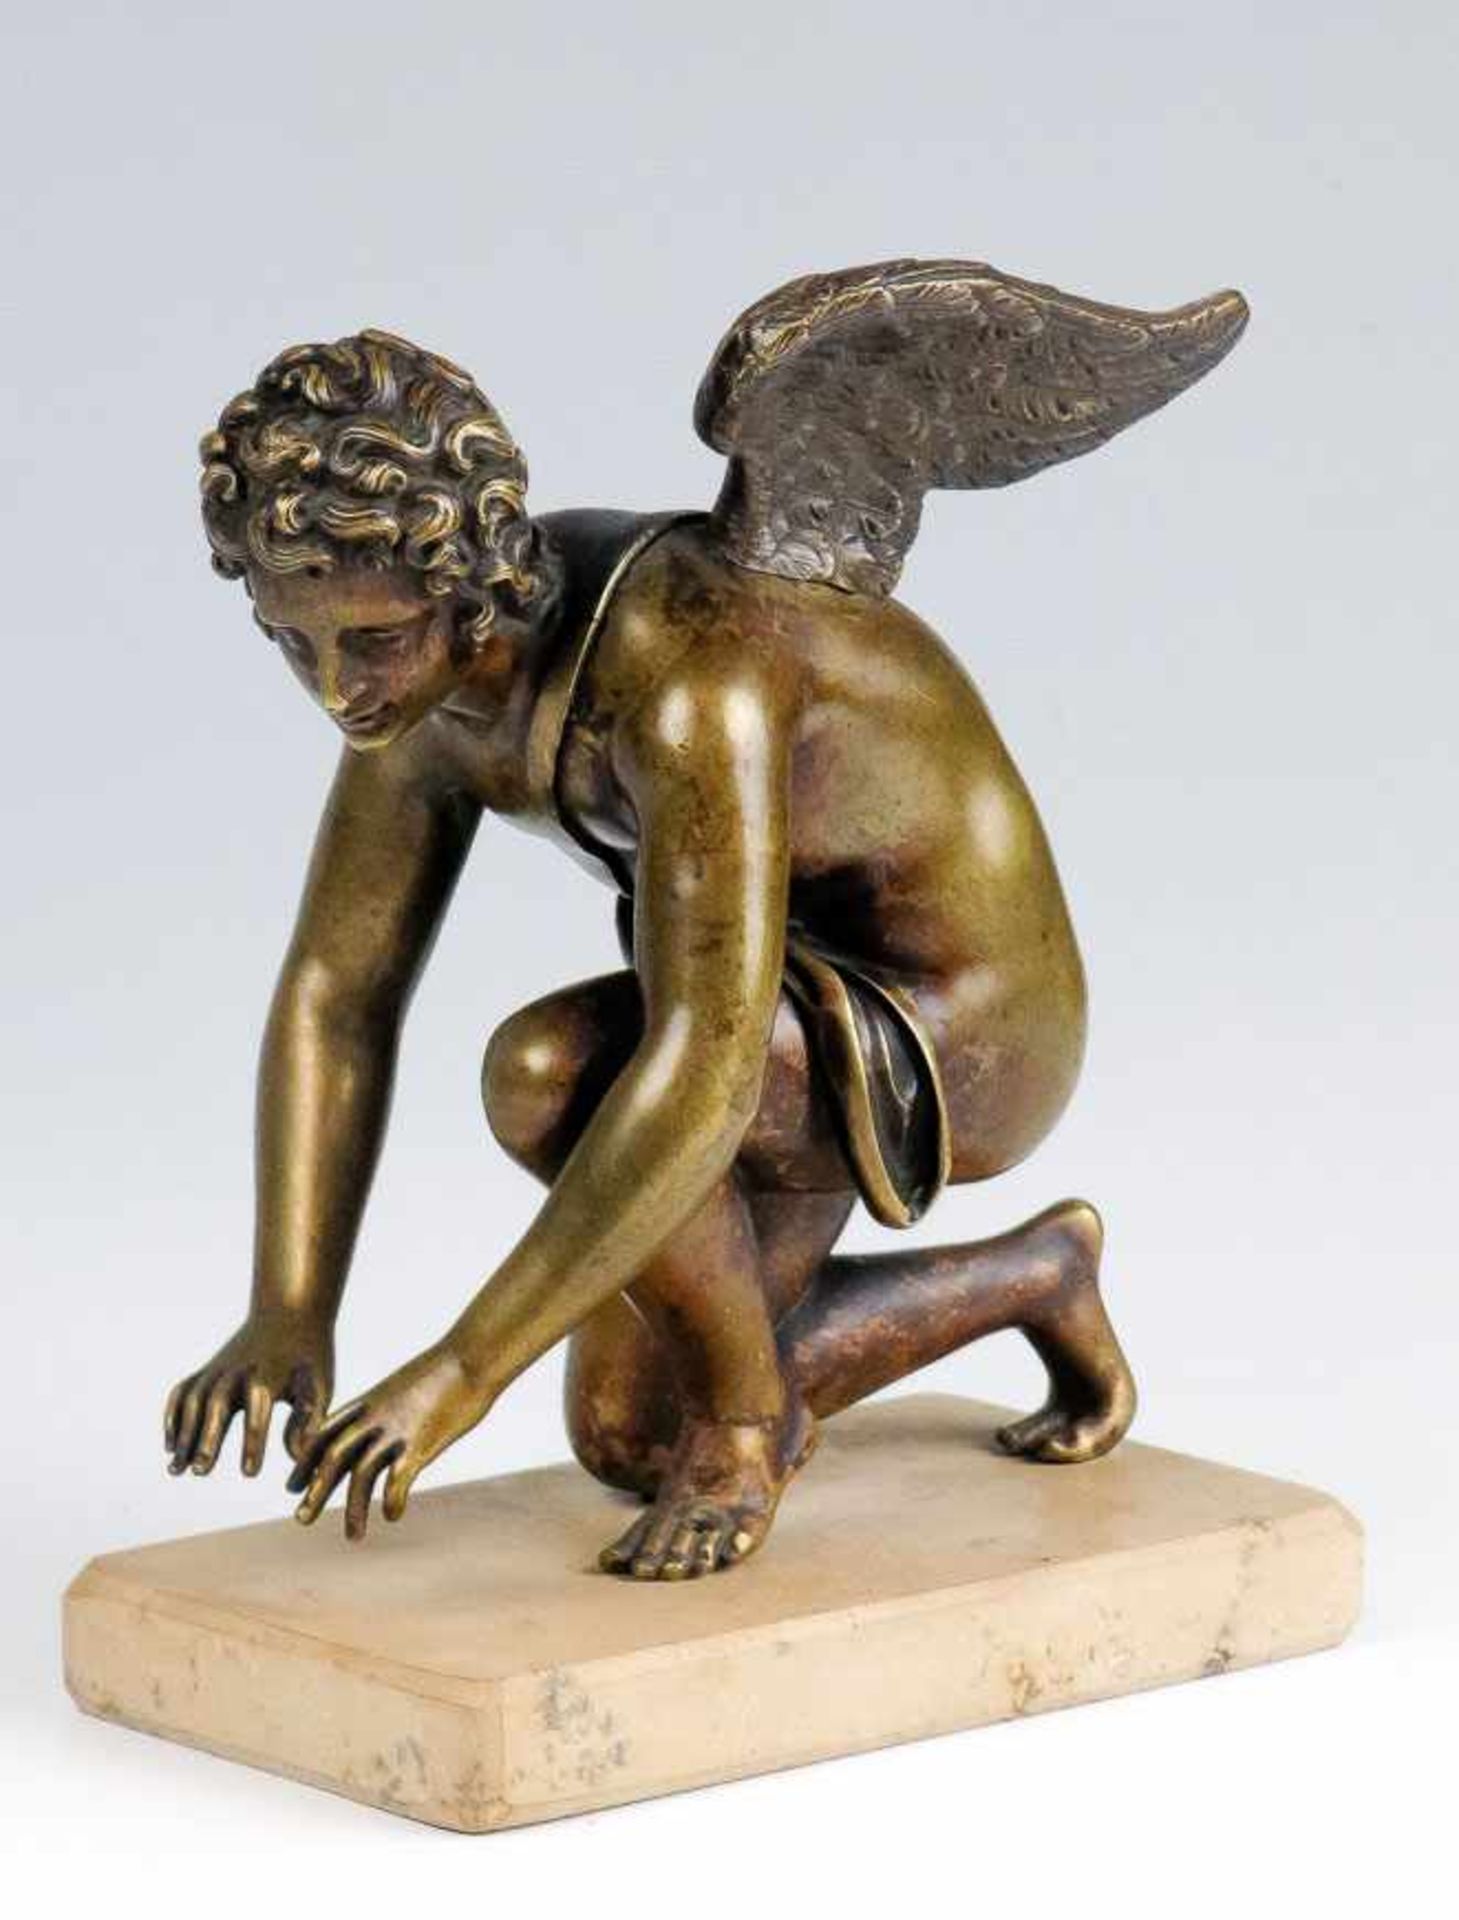 Chaudet, Denis Antonine (1763-1810) Cupido. Bronze. Nach der Marmorskulptur aus dem Louvre. Auf